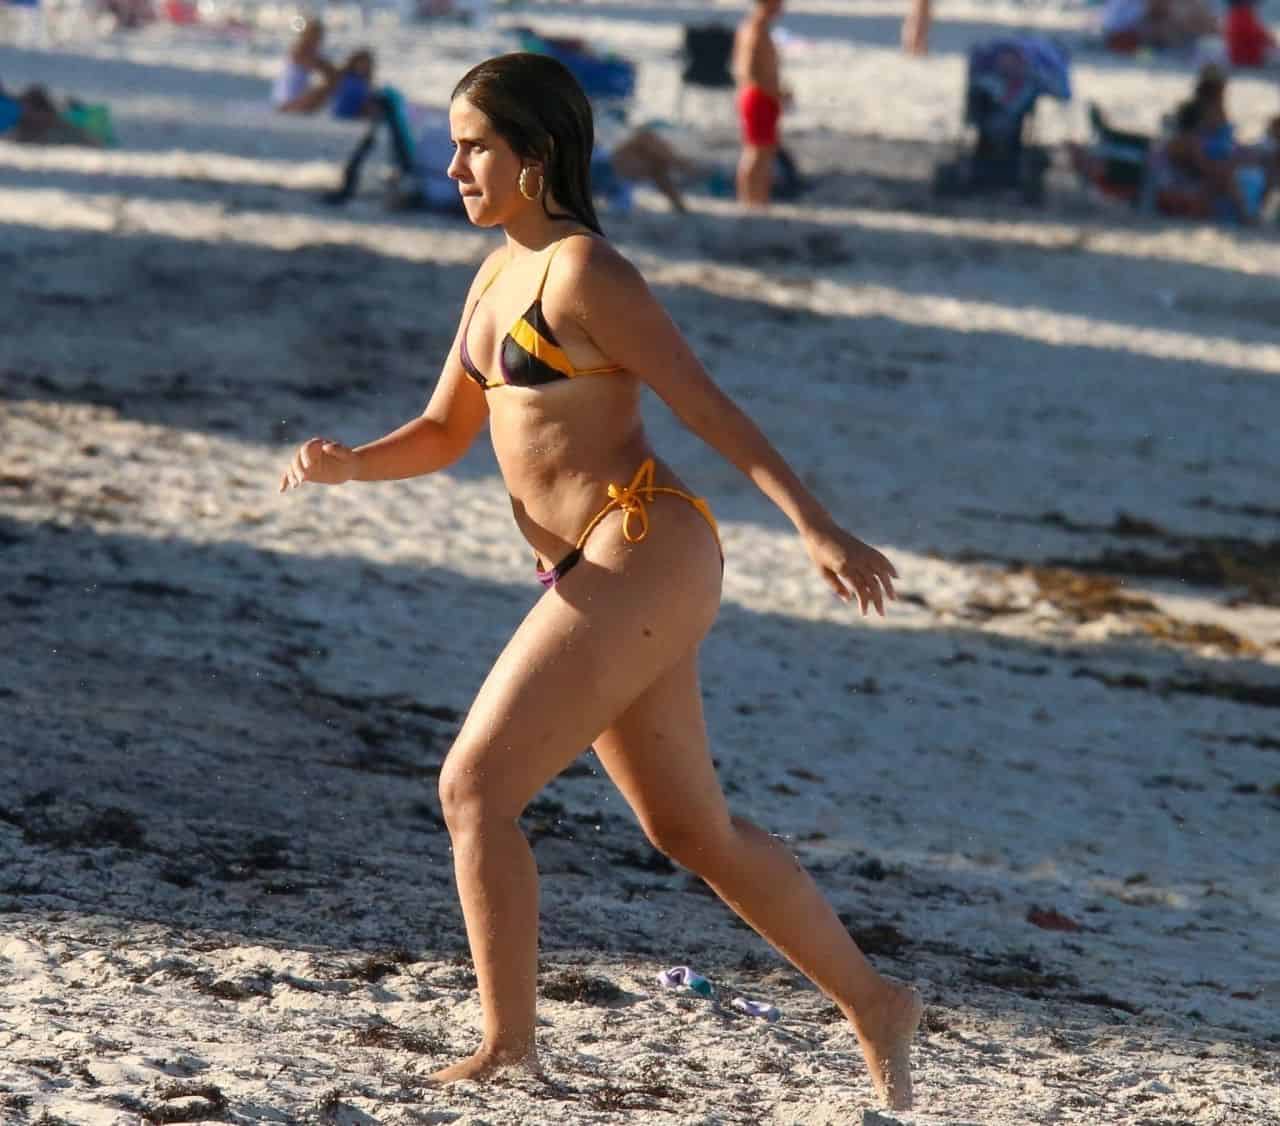 Camila Cabello in a Colorful Chic Bikini on the Beach in Coral Gables